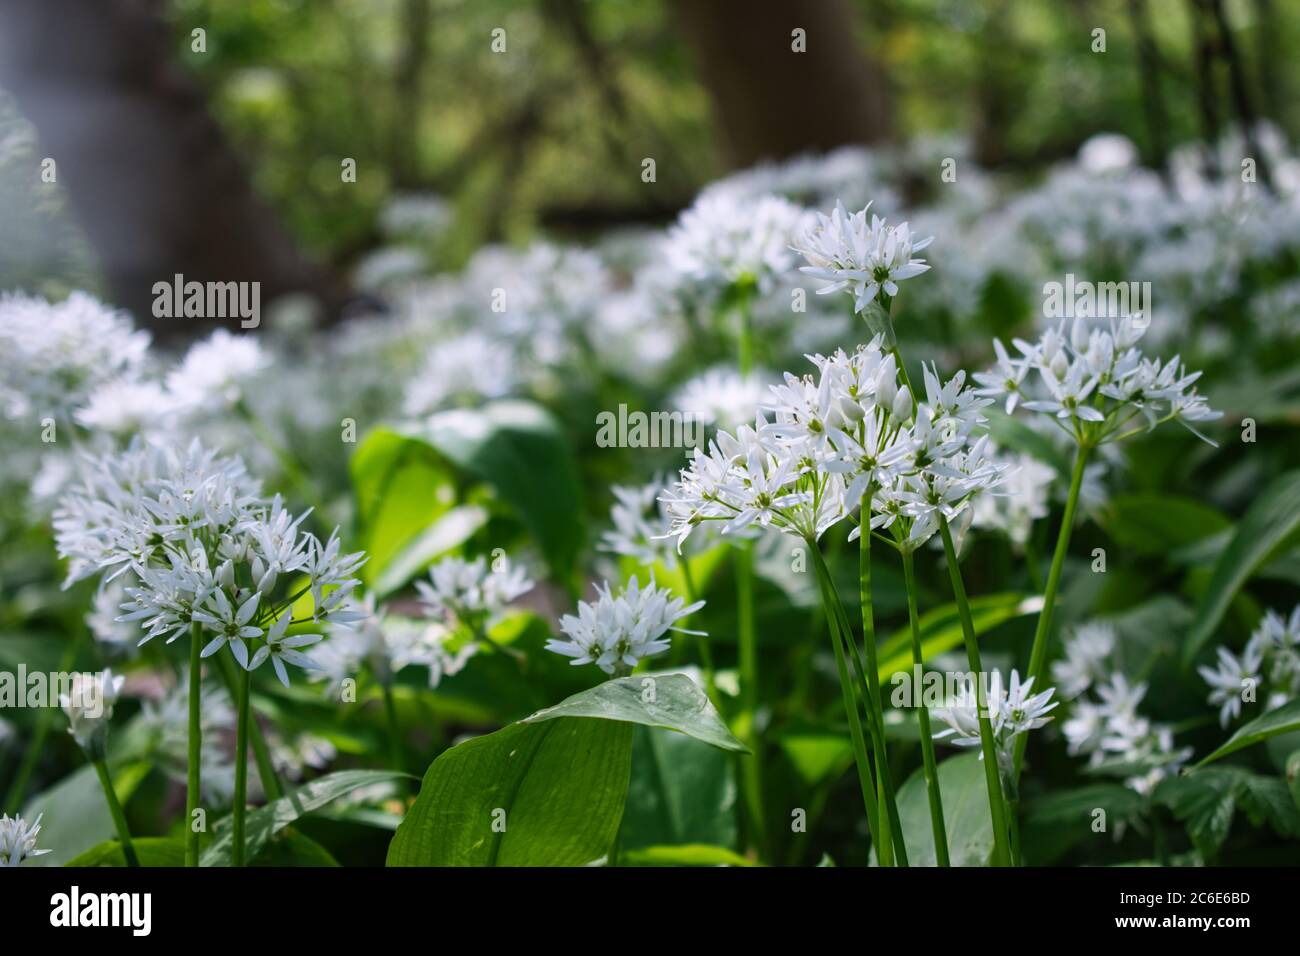 Bärlauch blüht in der Nähe, Bärlauch in natürlichen Lebensraum. Leuchtend grüne elliptische aromatische Blätter und weiße sternförmige Blütentepals Stockfoto